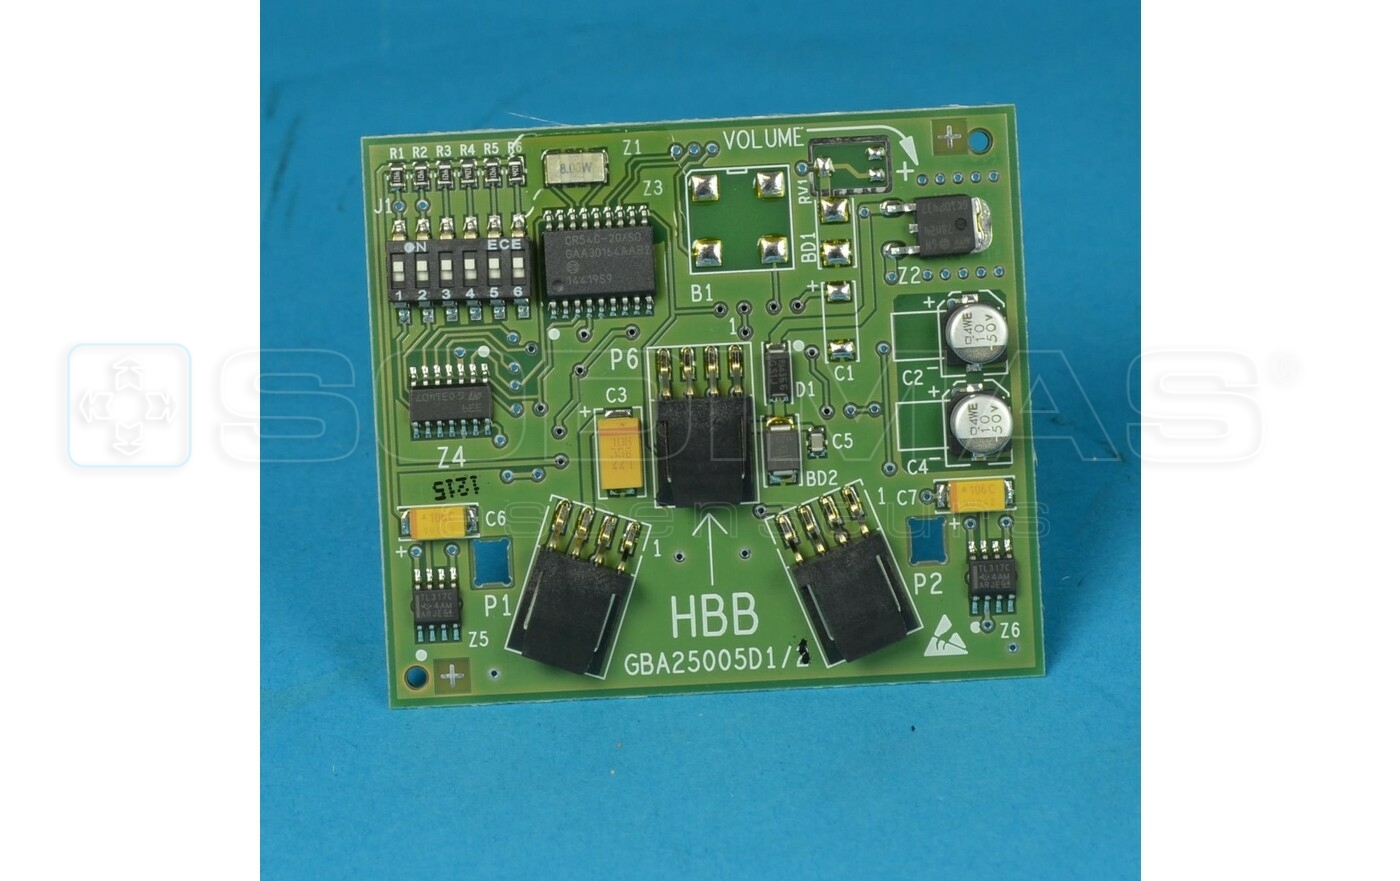 Remote palière HBB sans buzzer - GBA25005D1-GEN2